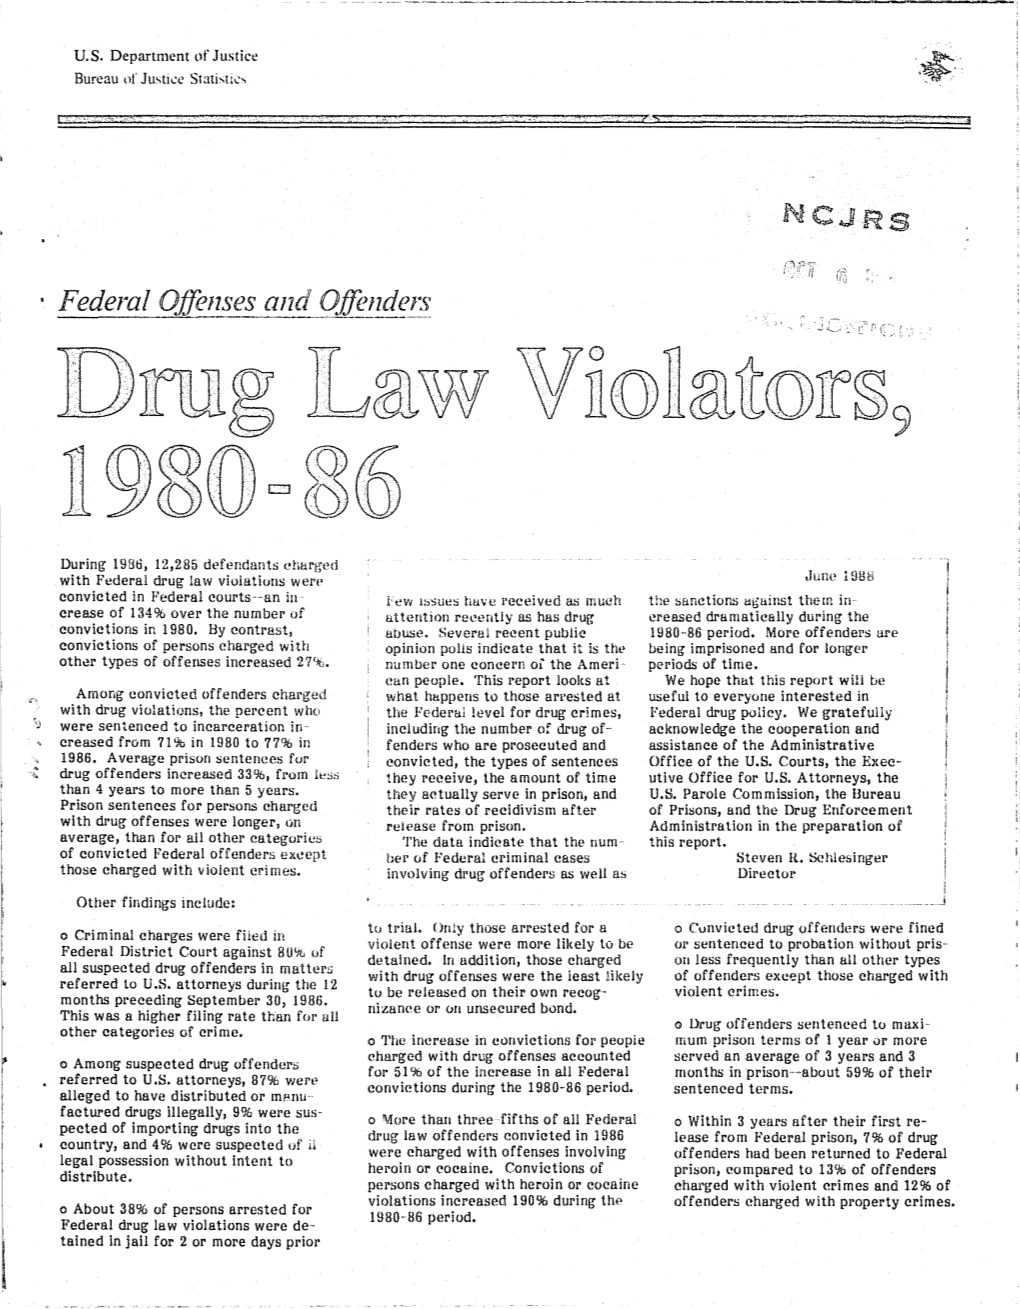 Drug Law Violators, 1980-86